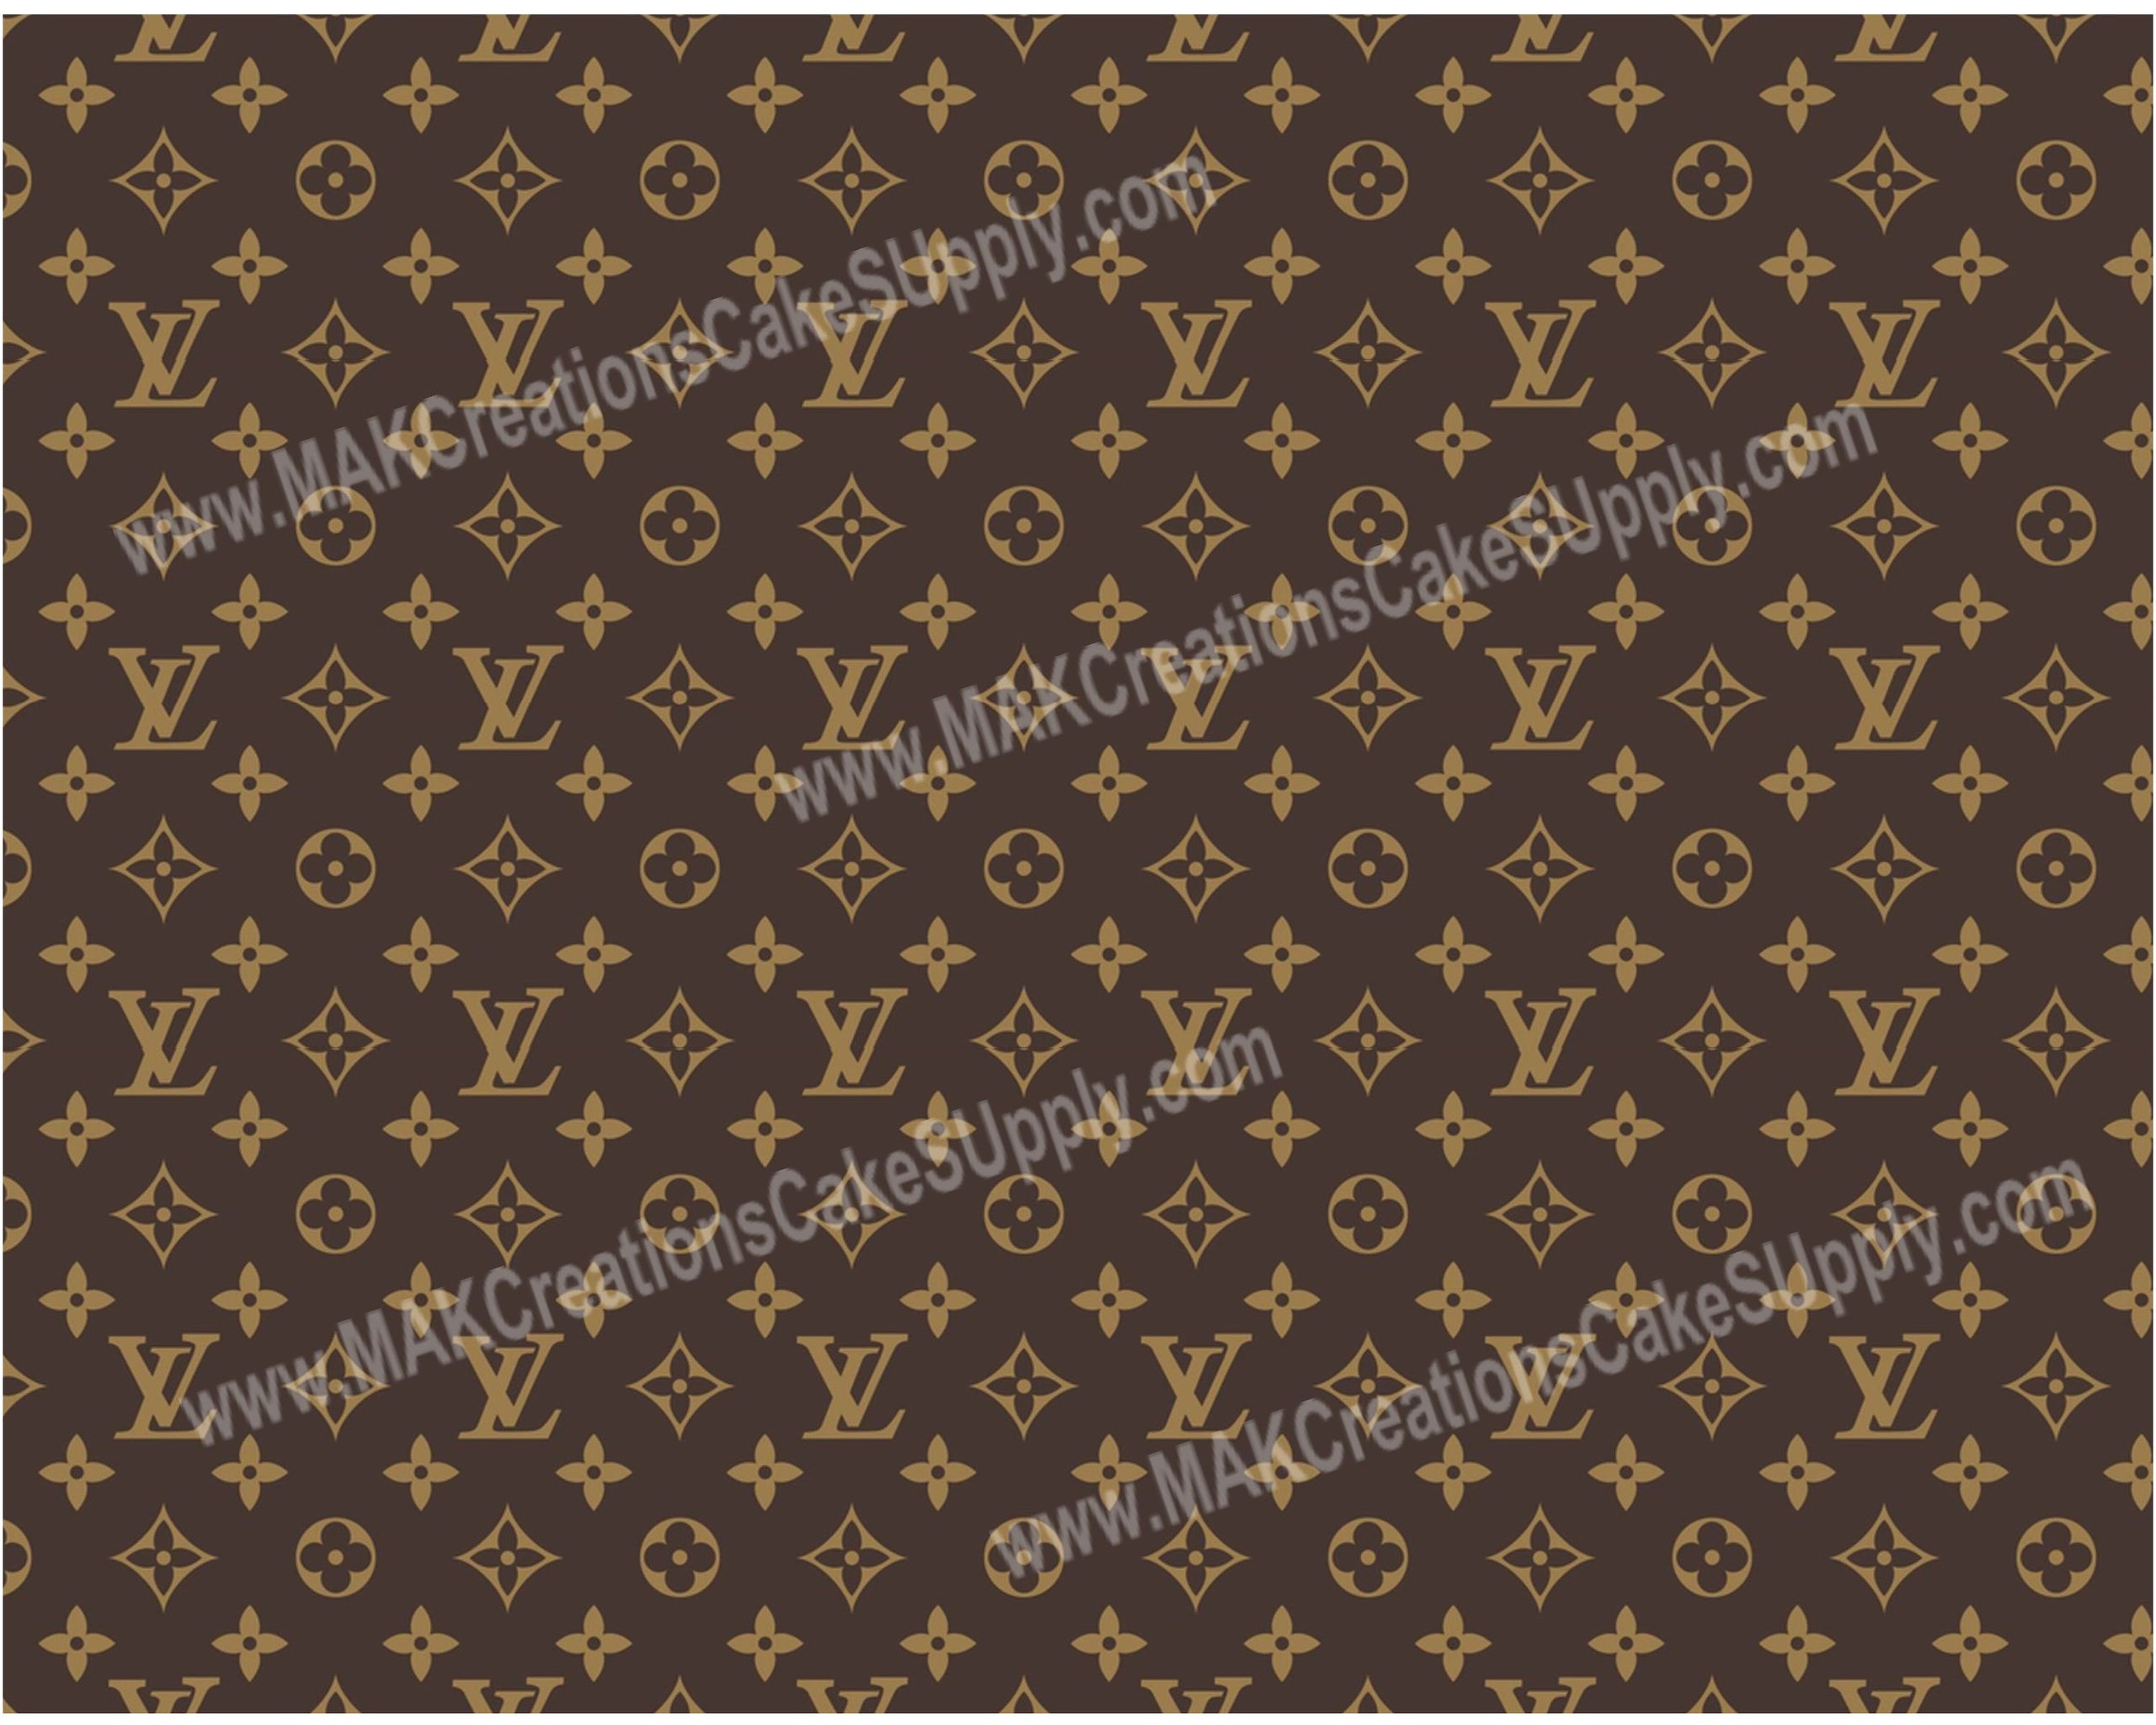 Louis Vuitton edible prints - Rice paper - BULK BUY